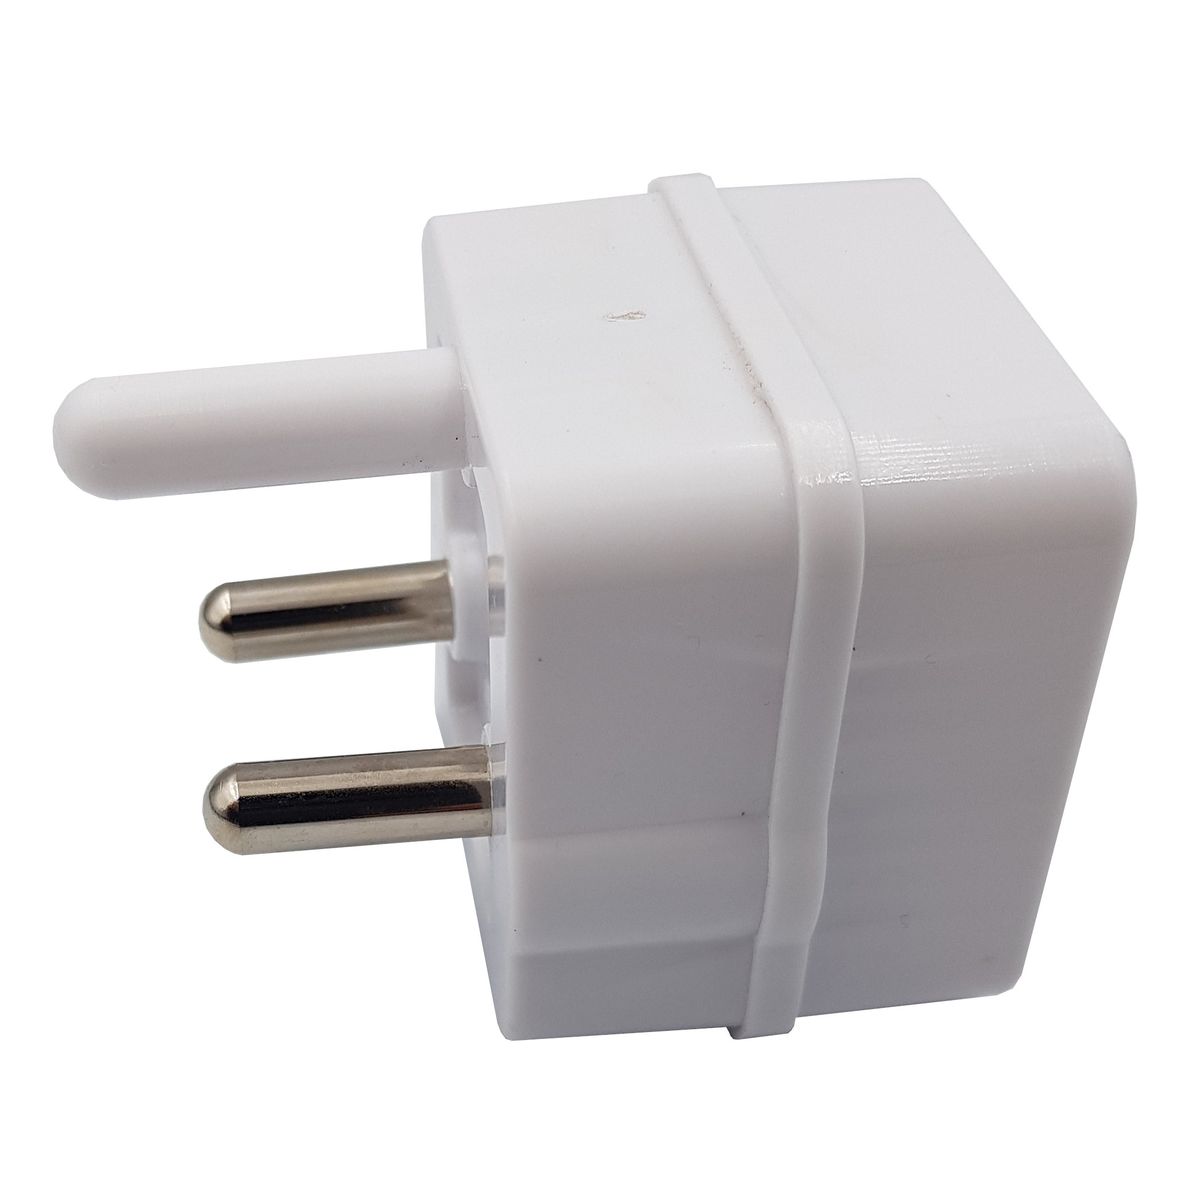 Plug Adaptor: 2 way 2 X 5A 2 pin / Euro Adaptor